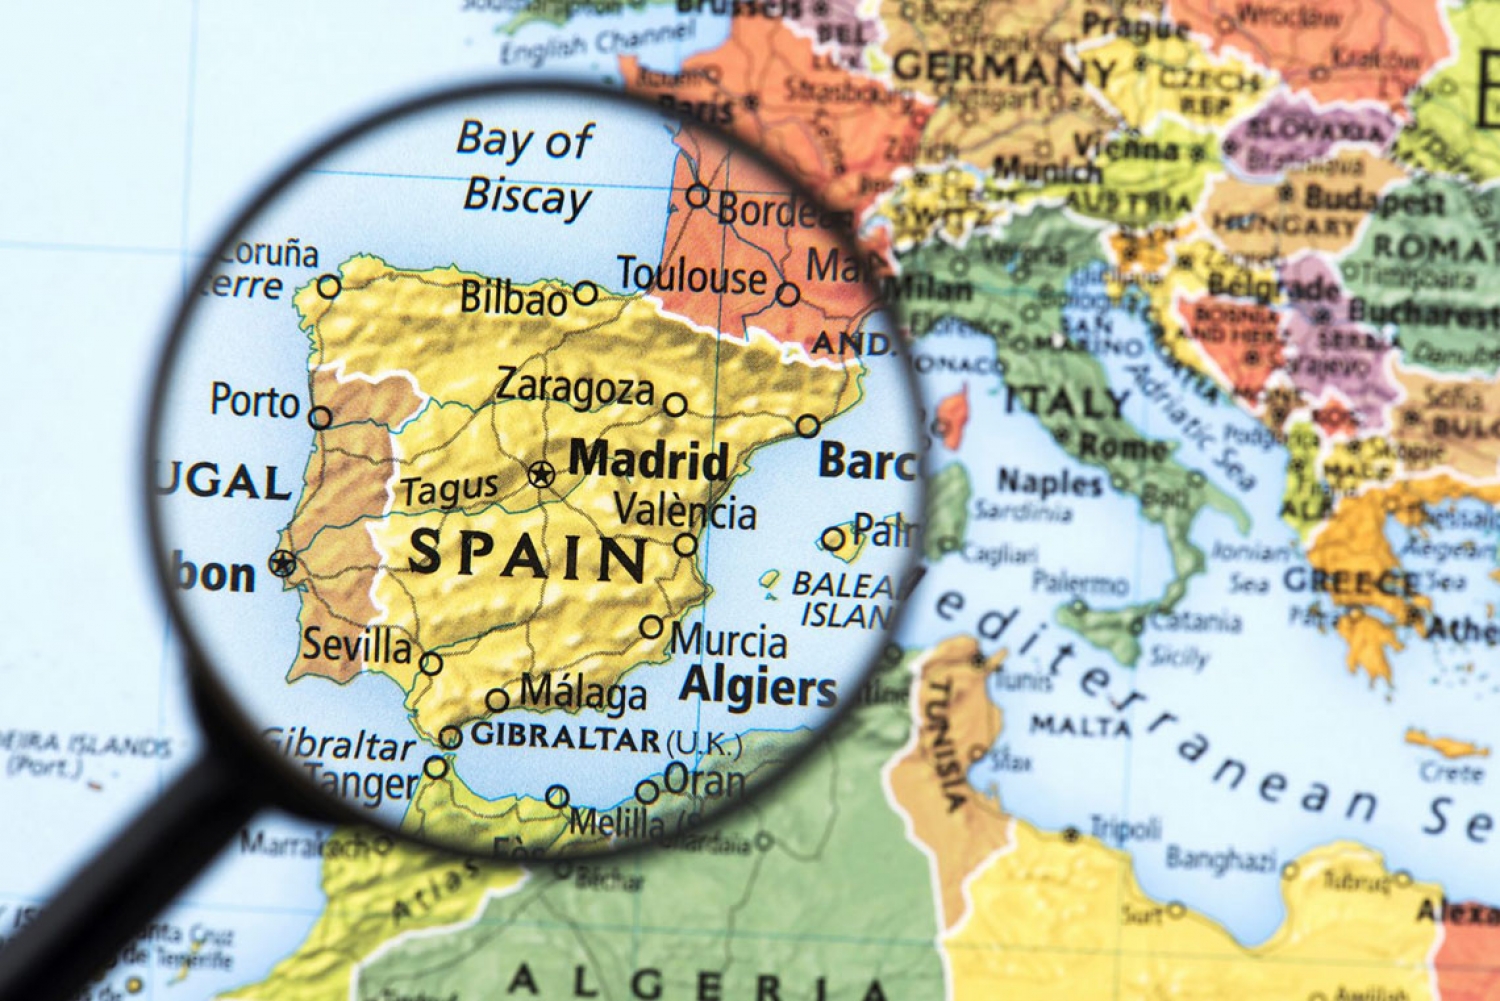 Шенгенская виза в Испанию